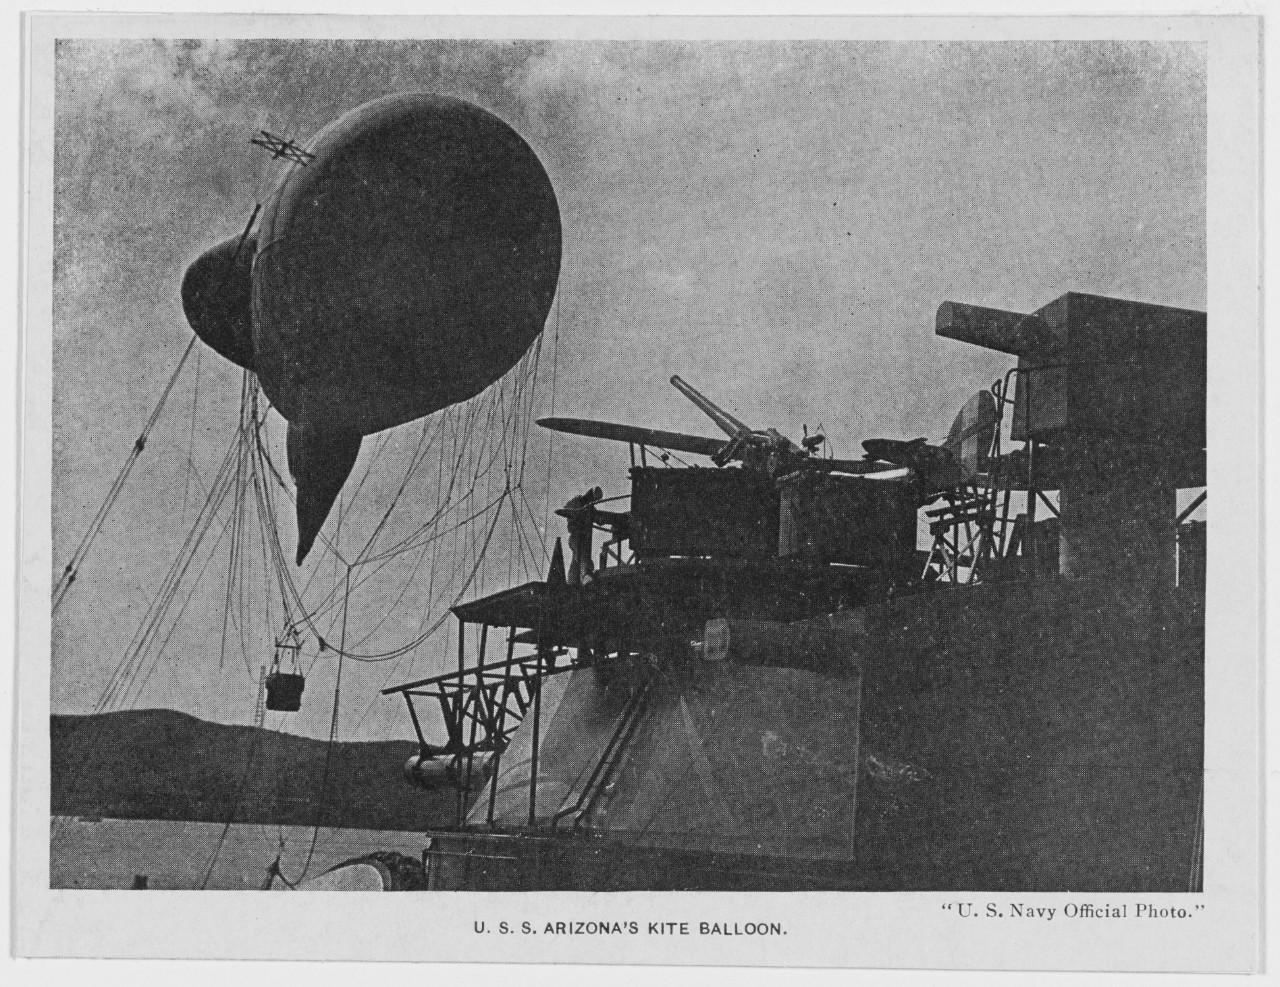 Kite balloon of USS ARIZONA